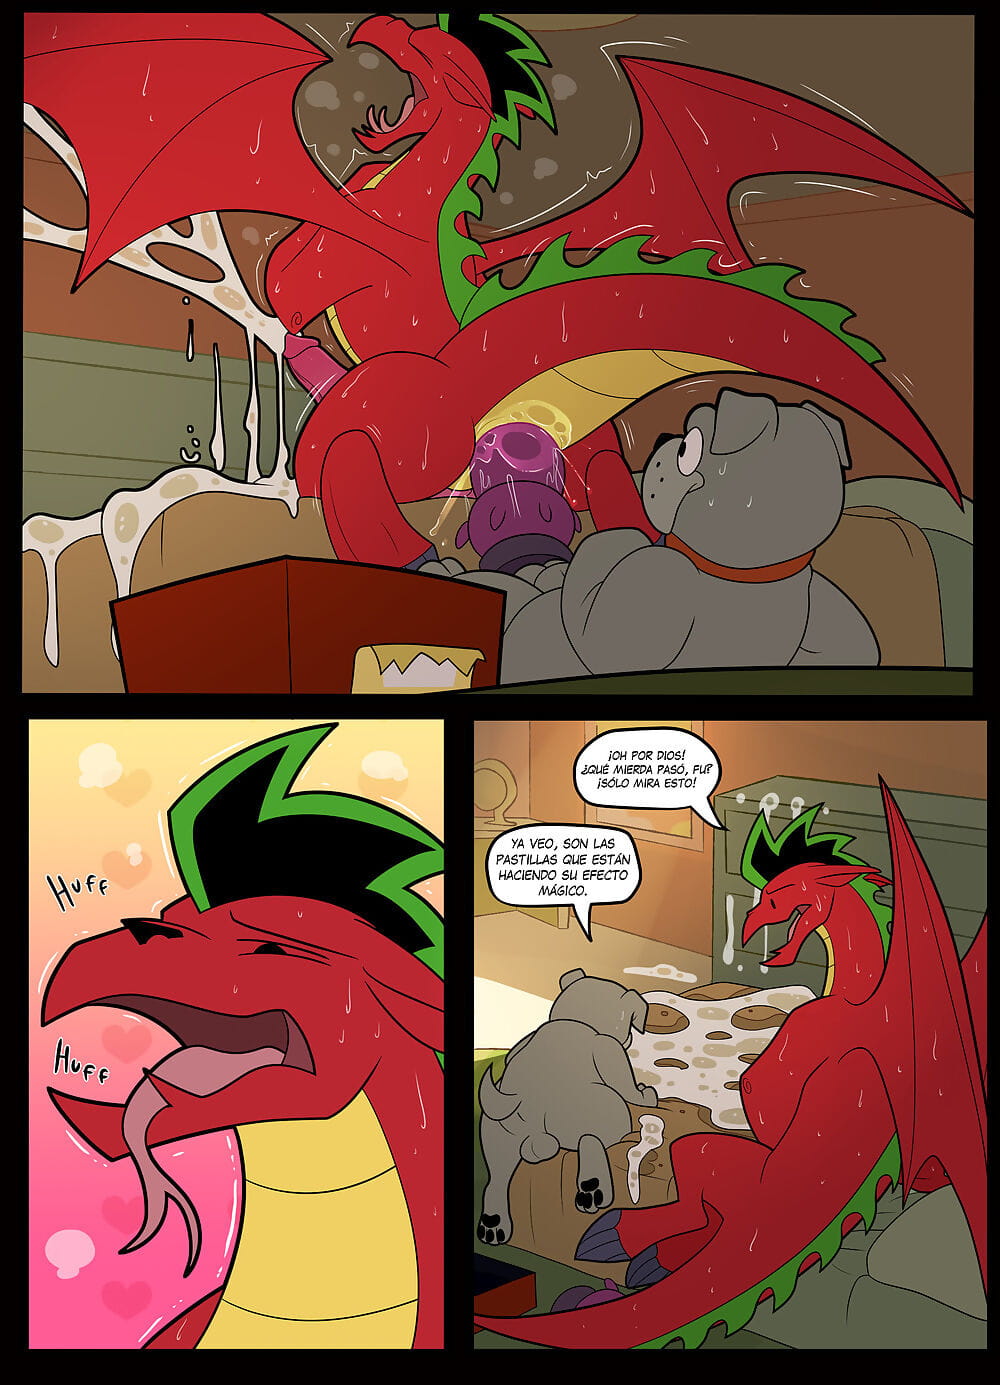 Dragon Comic Porn